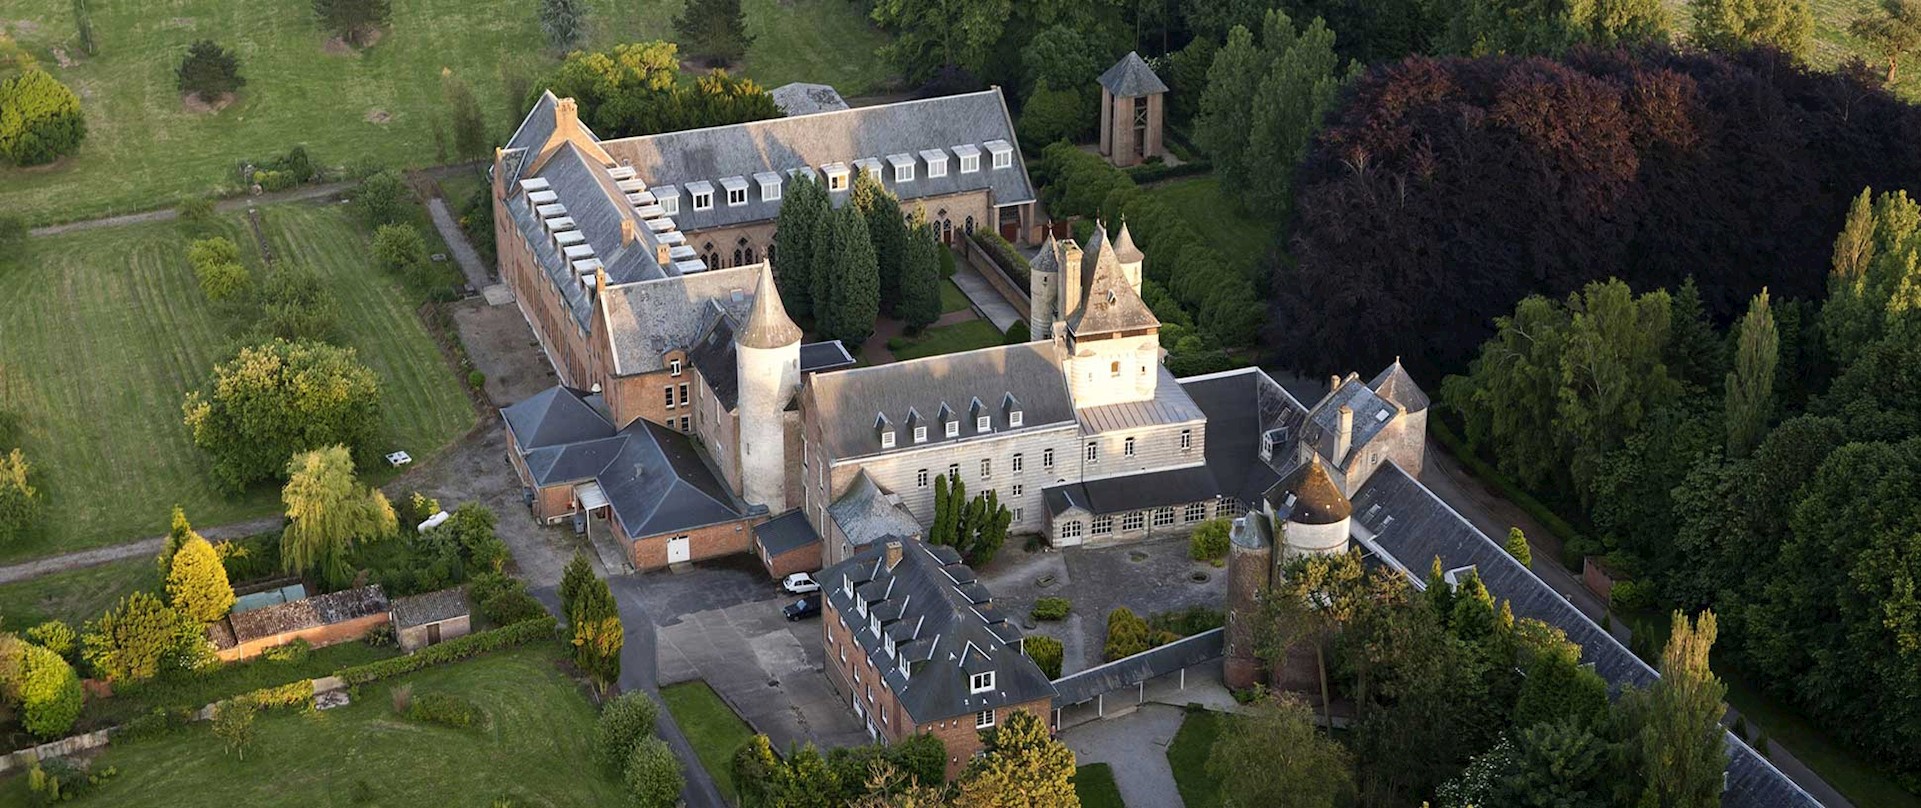 Wisques, abbaye bénédictine Saint-Paul (vue aérienne). © Olivier LECLERCQ / HEMIS